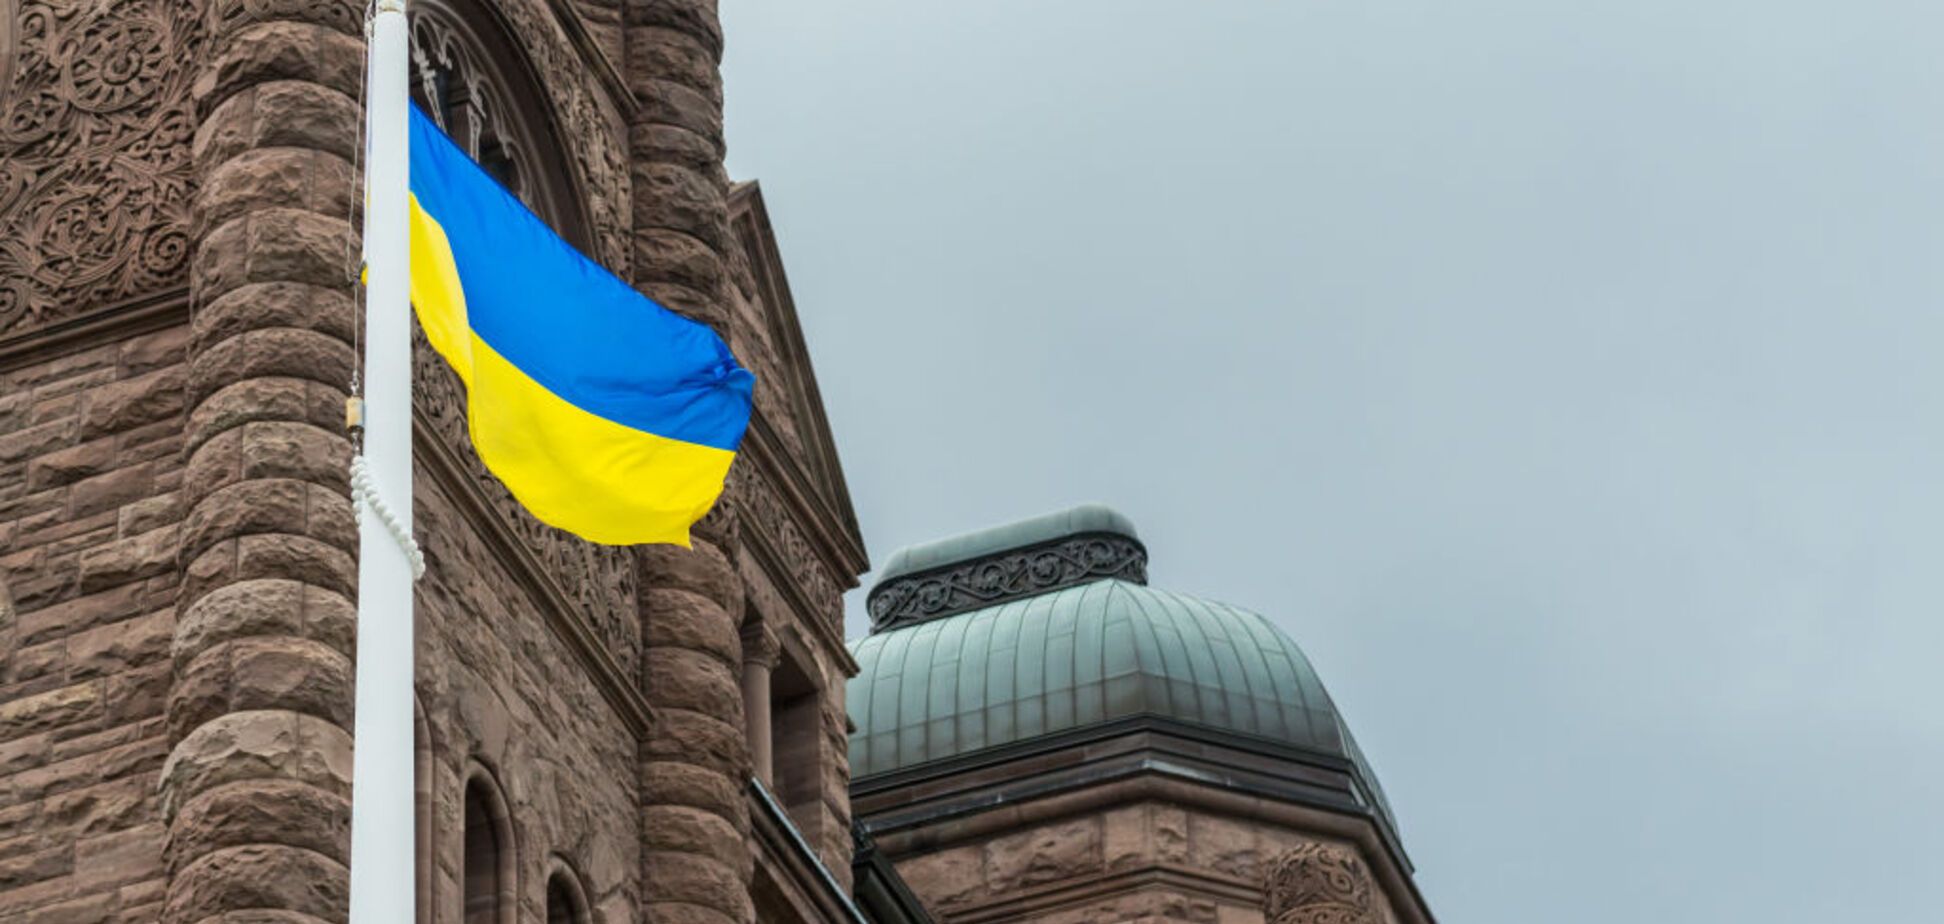 'Ждем начала диалога': Украина нацелилась на безвиз с еще одной страной